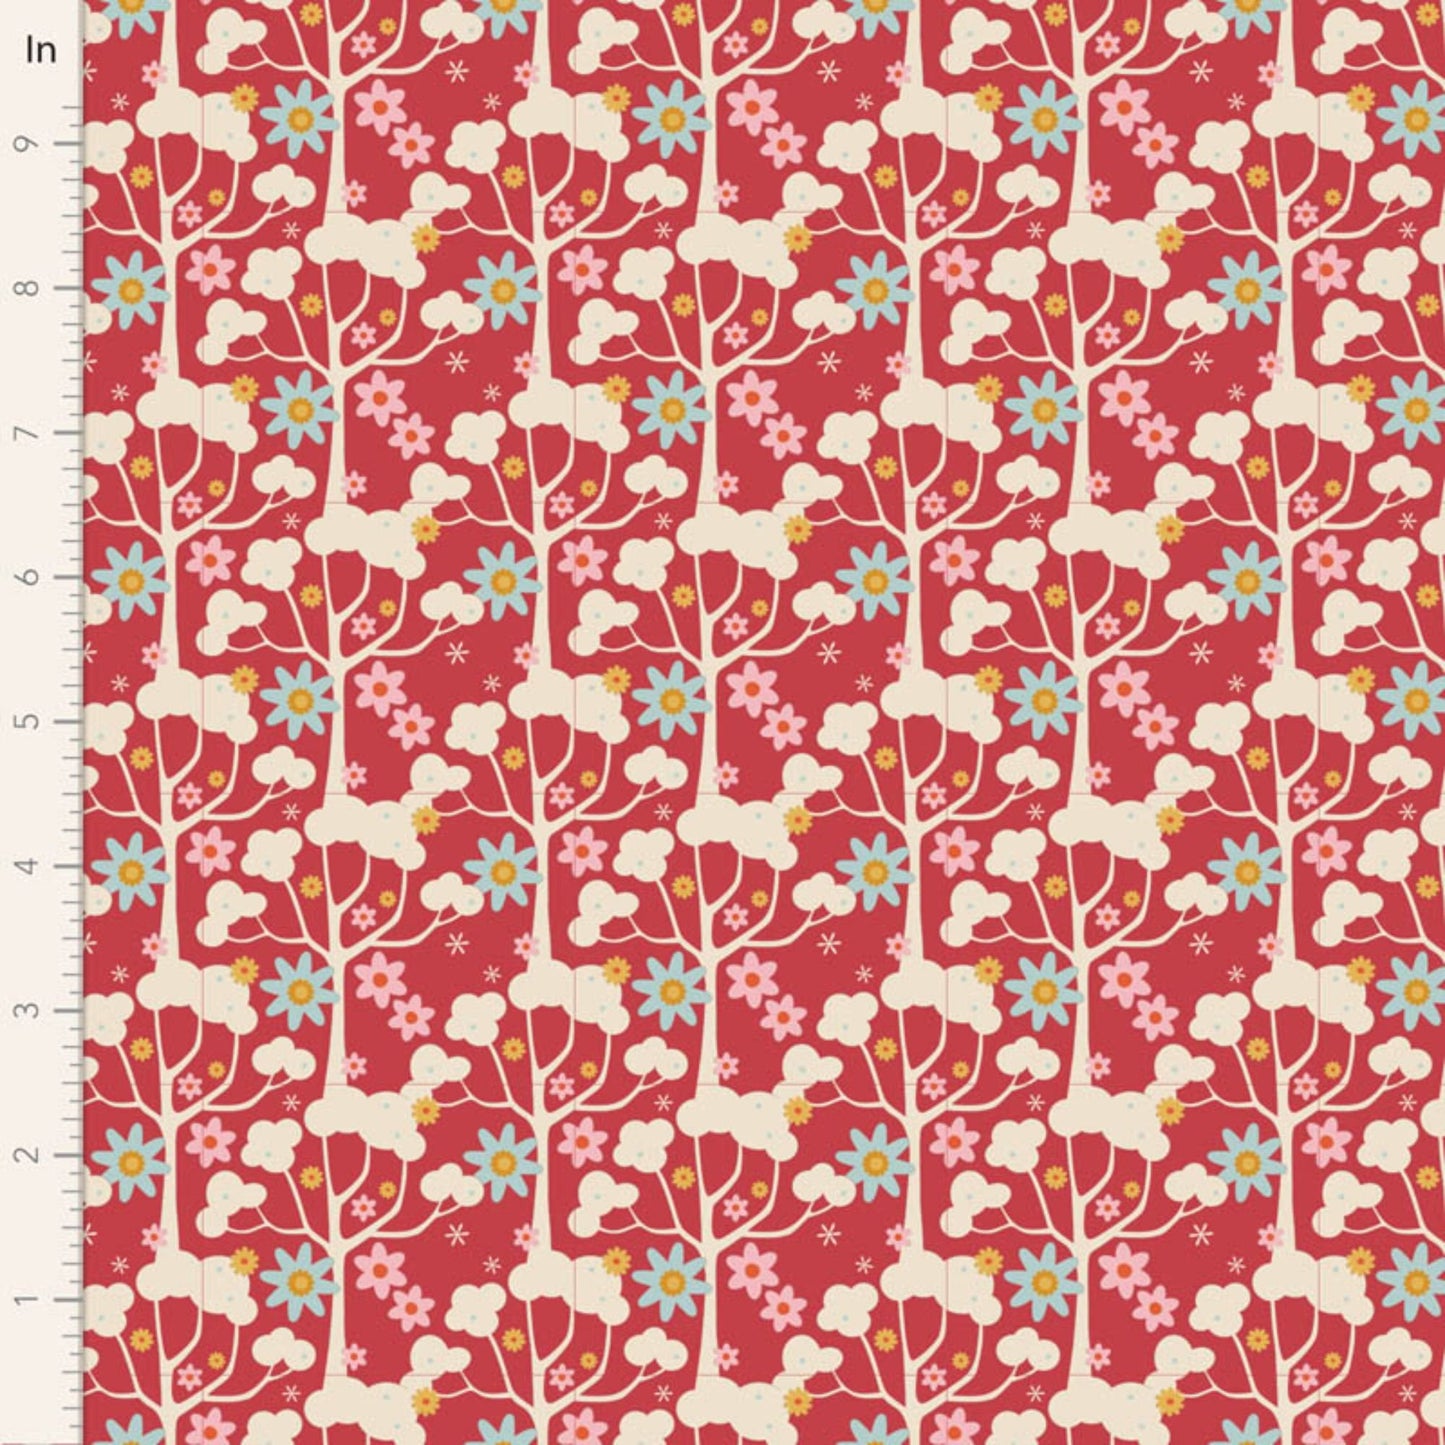 Jubilee 5 Piece Fat Quarter Bundle - Red - Tilda Fabrics TIL300182